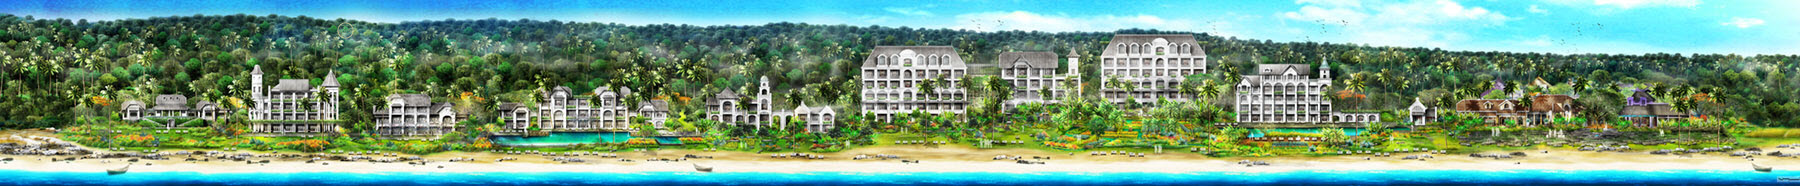 Bản vẽ 2D khu nghỉ dưỡng JW Marriot Phu Quoc Phu Quoc Emerald Bay Resort & Spa-Ảnh 2